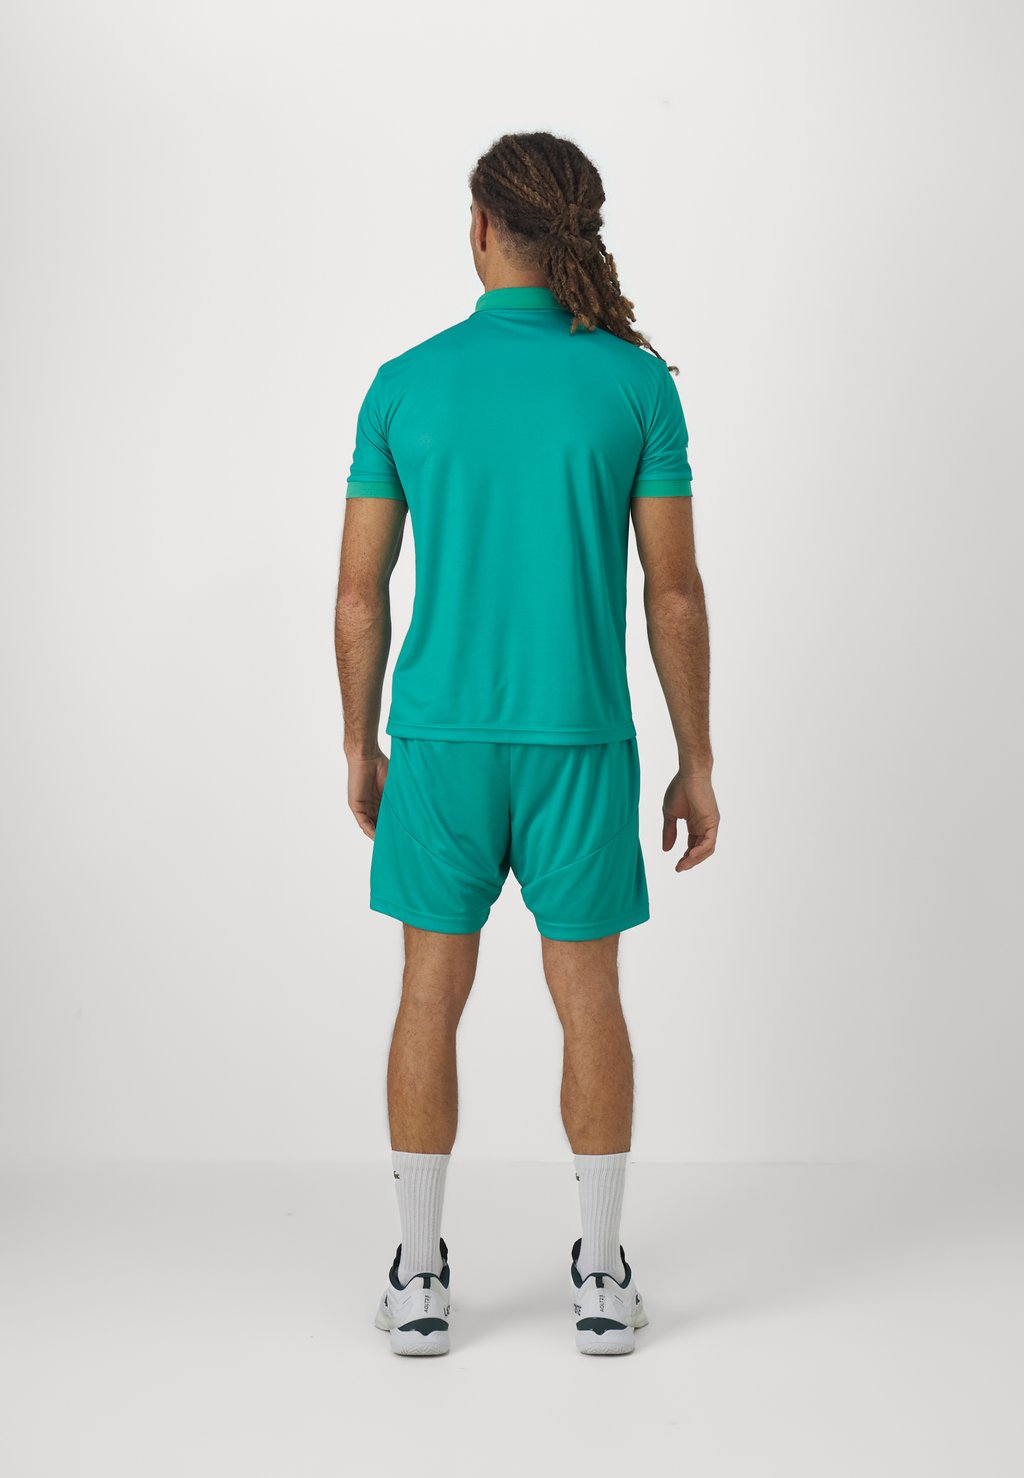 Спортивная футболка TENNIS PRO GRAPHIC EA7 Emporio Armani, цвет spectra green